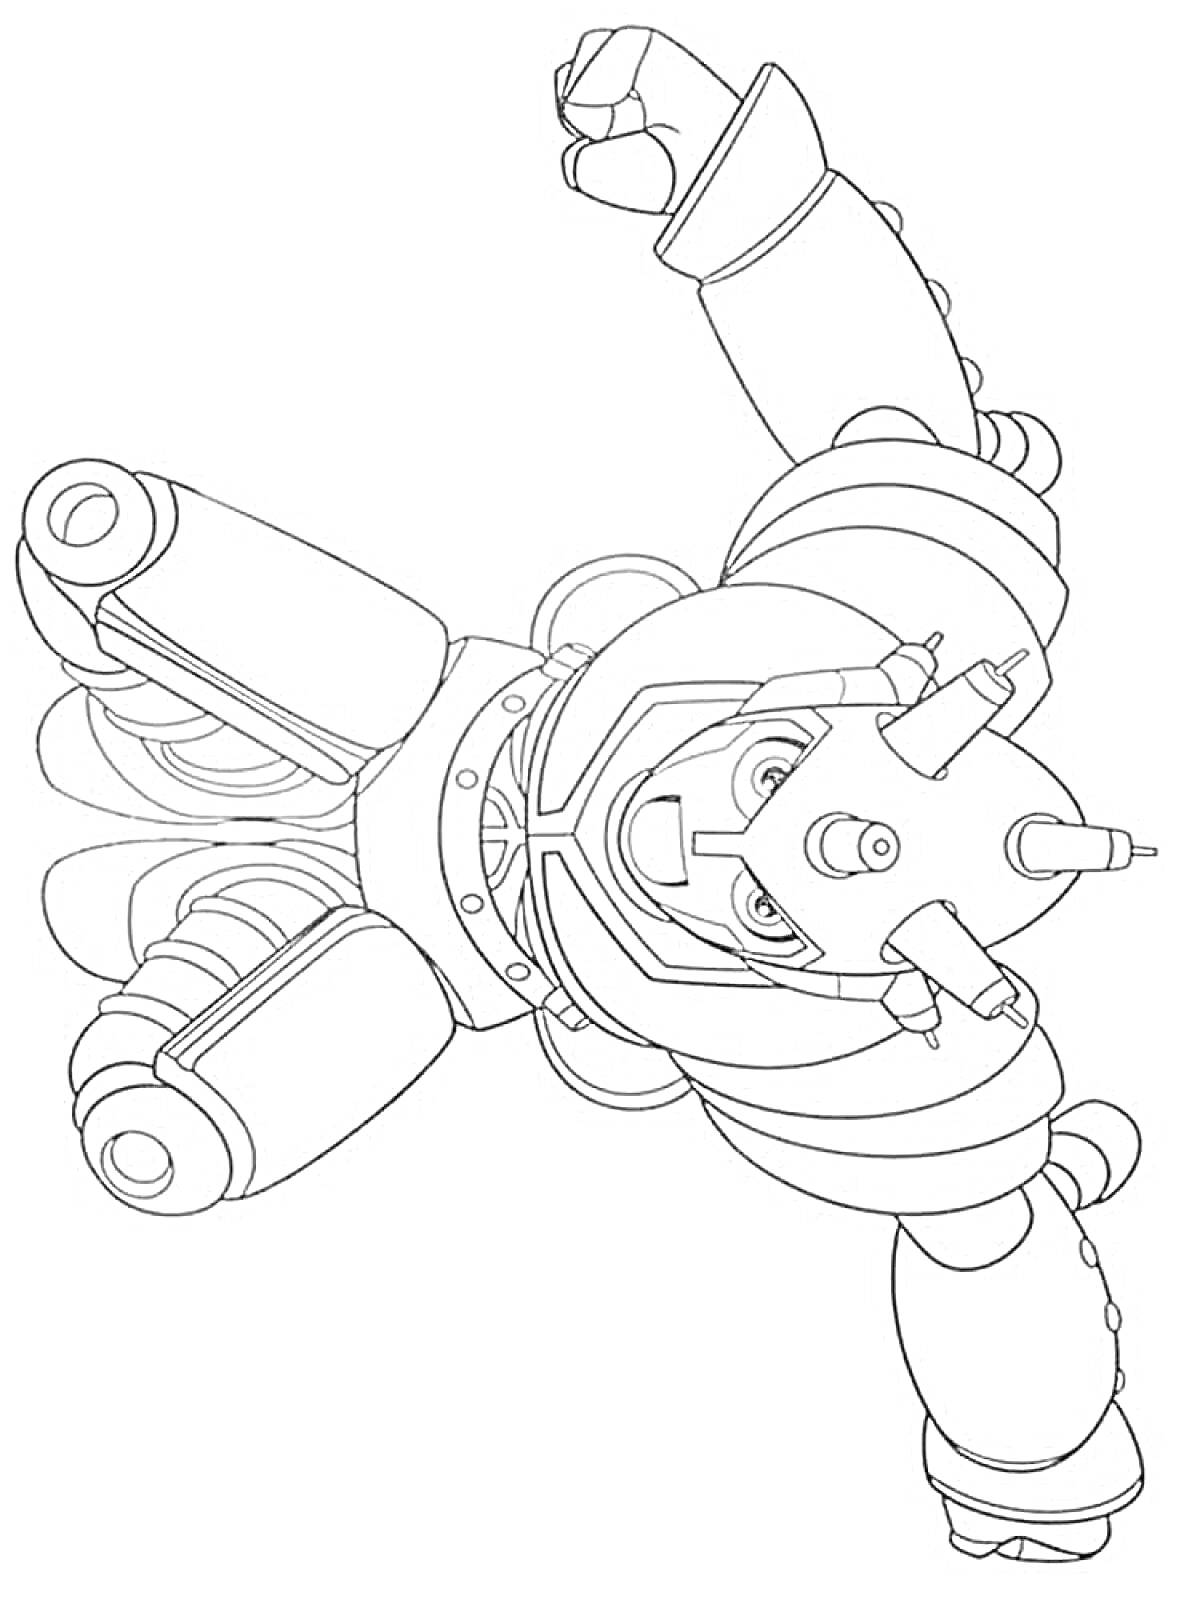 Астробой в боевом костюме, летящий вперёд с поднятым кулаком